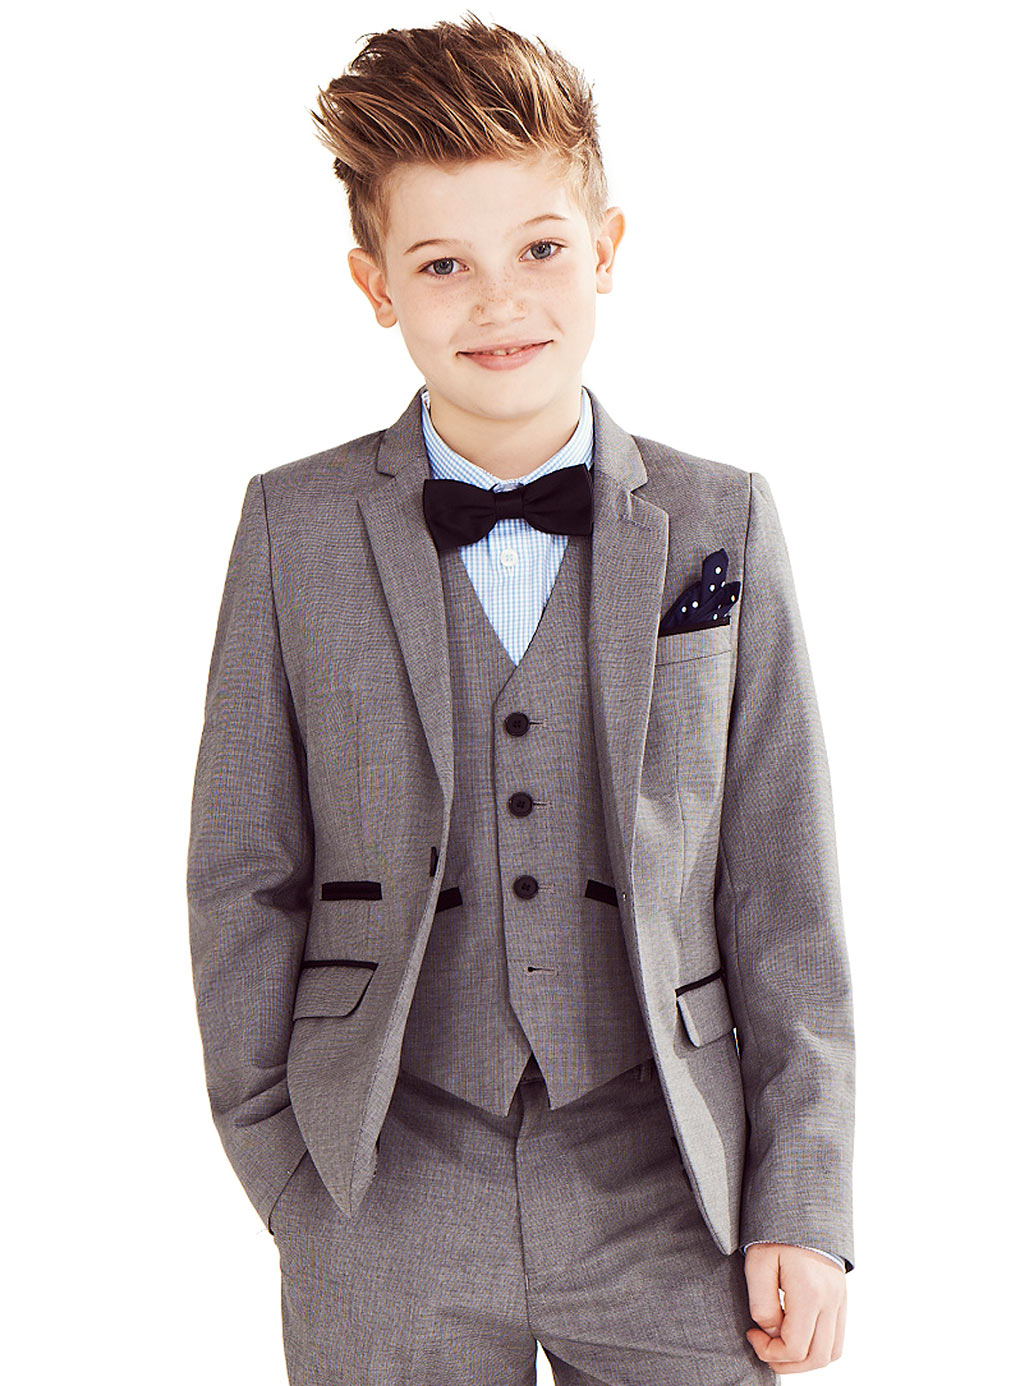 boys suit suit for boys - google zoeken orkrbyz